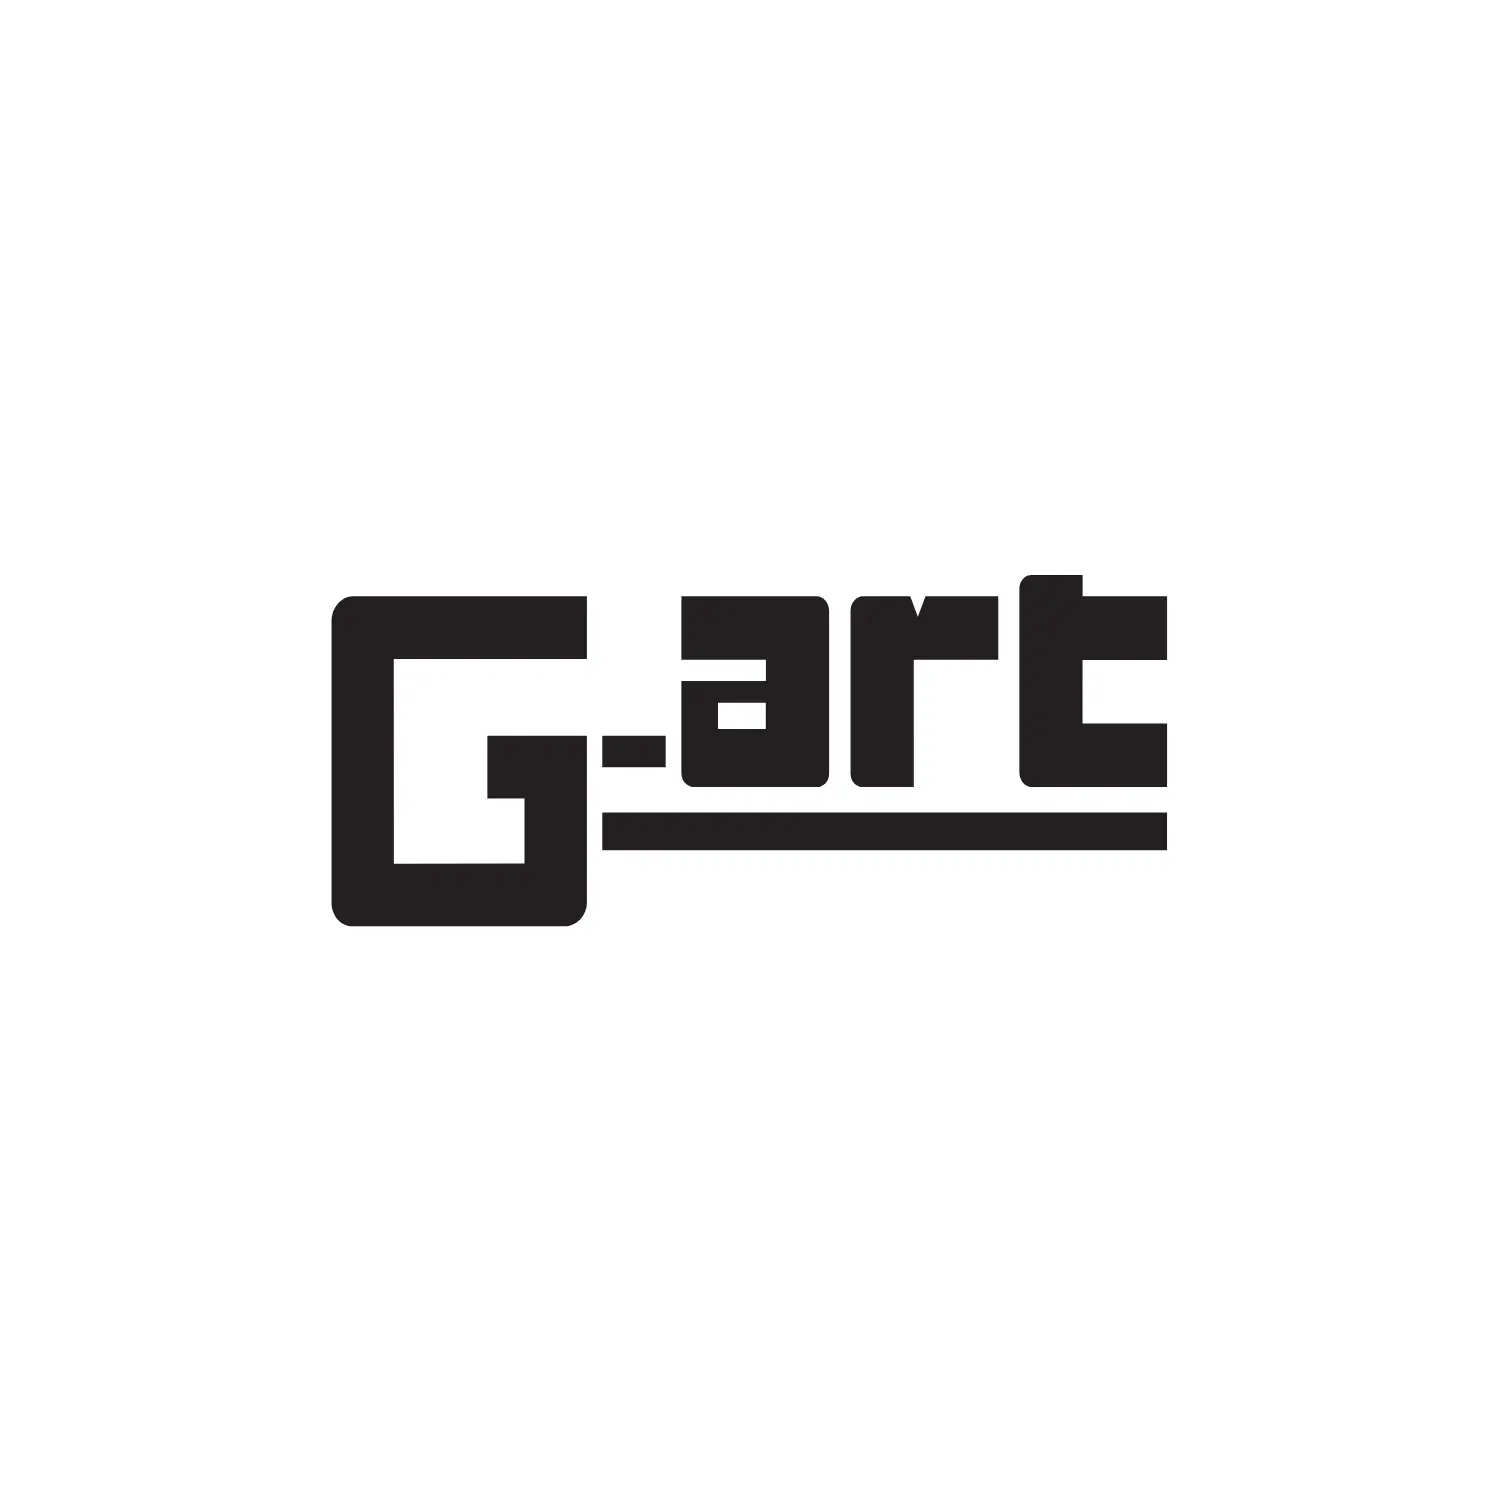 G-art